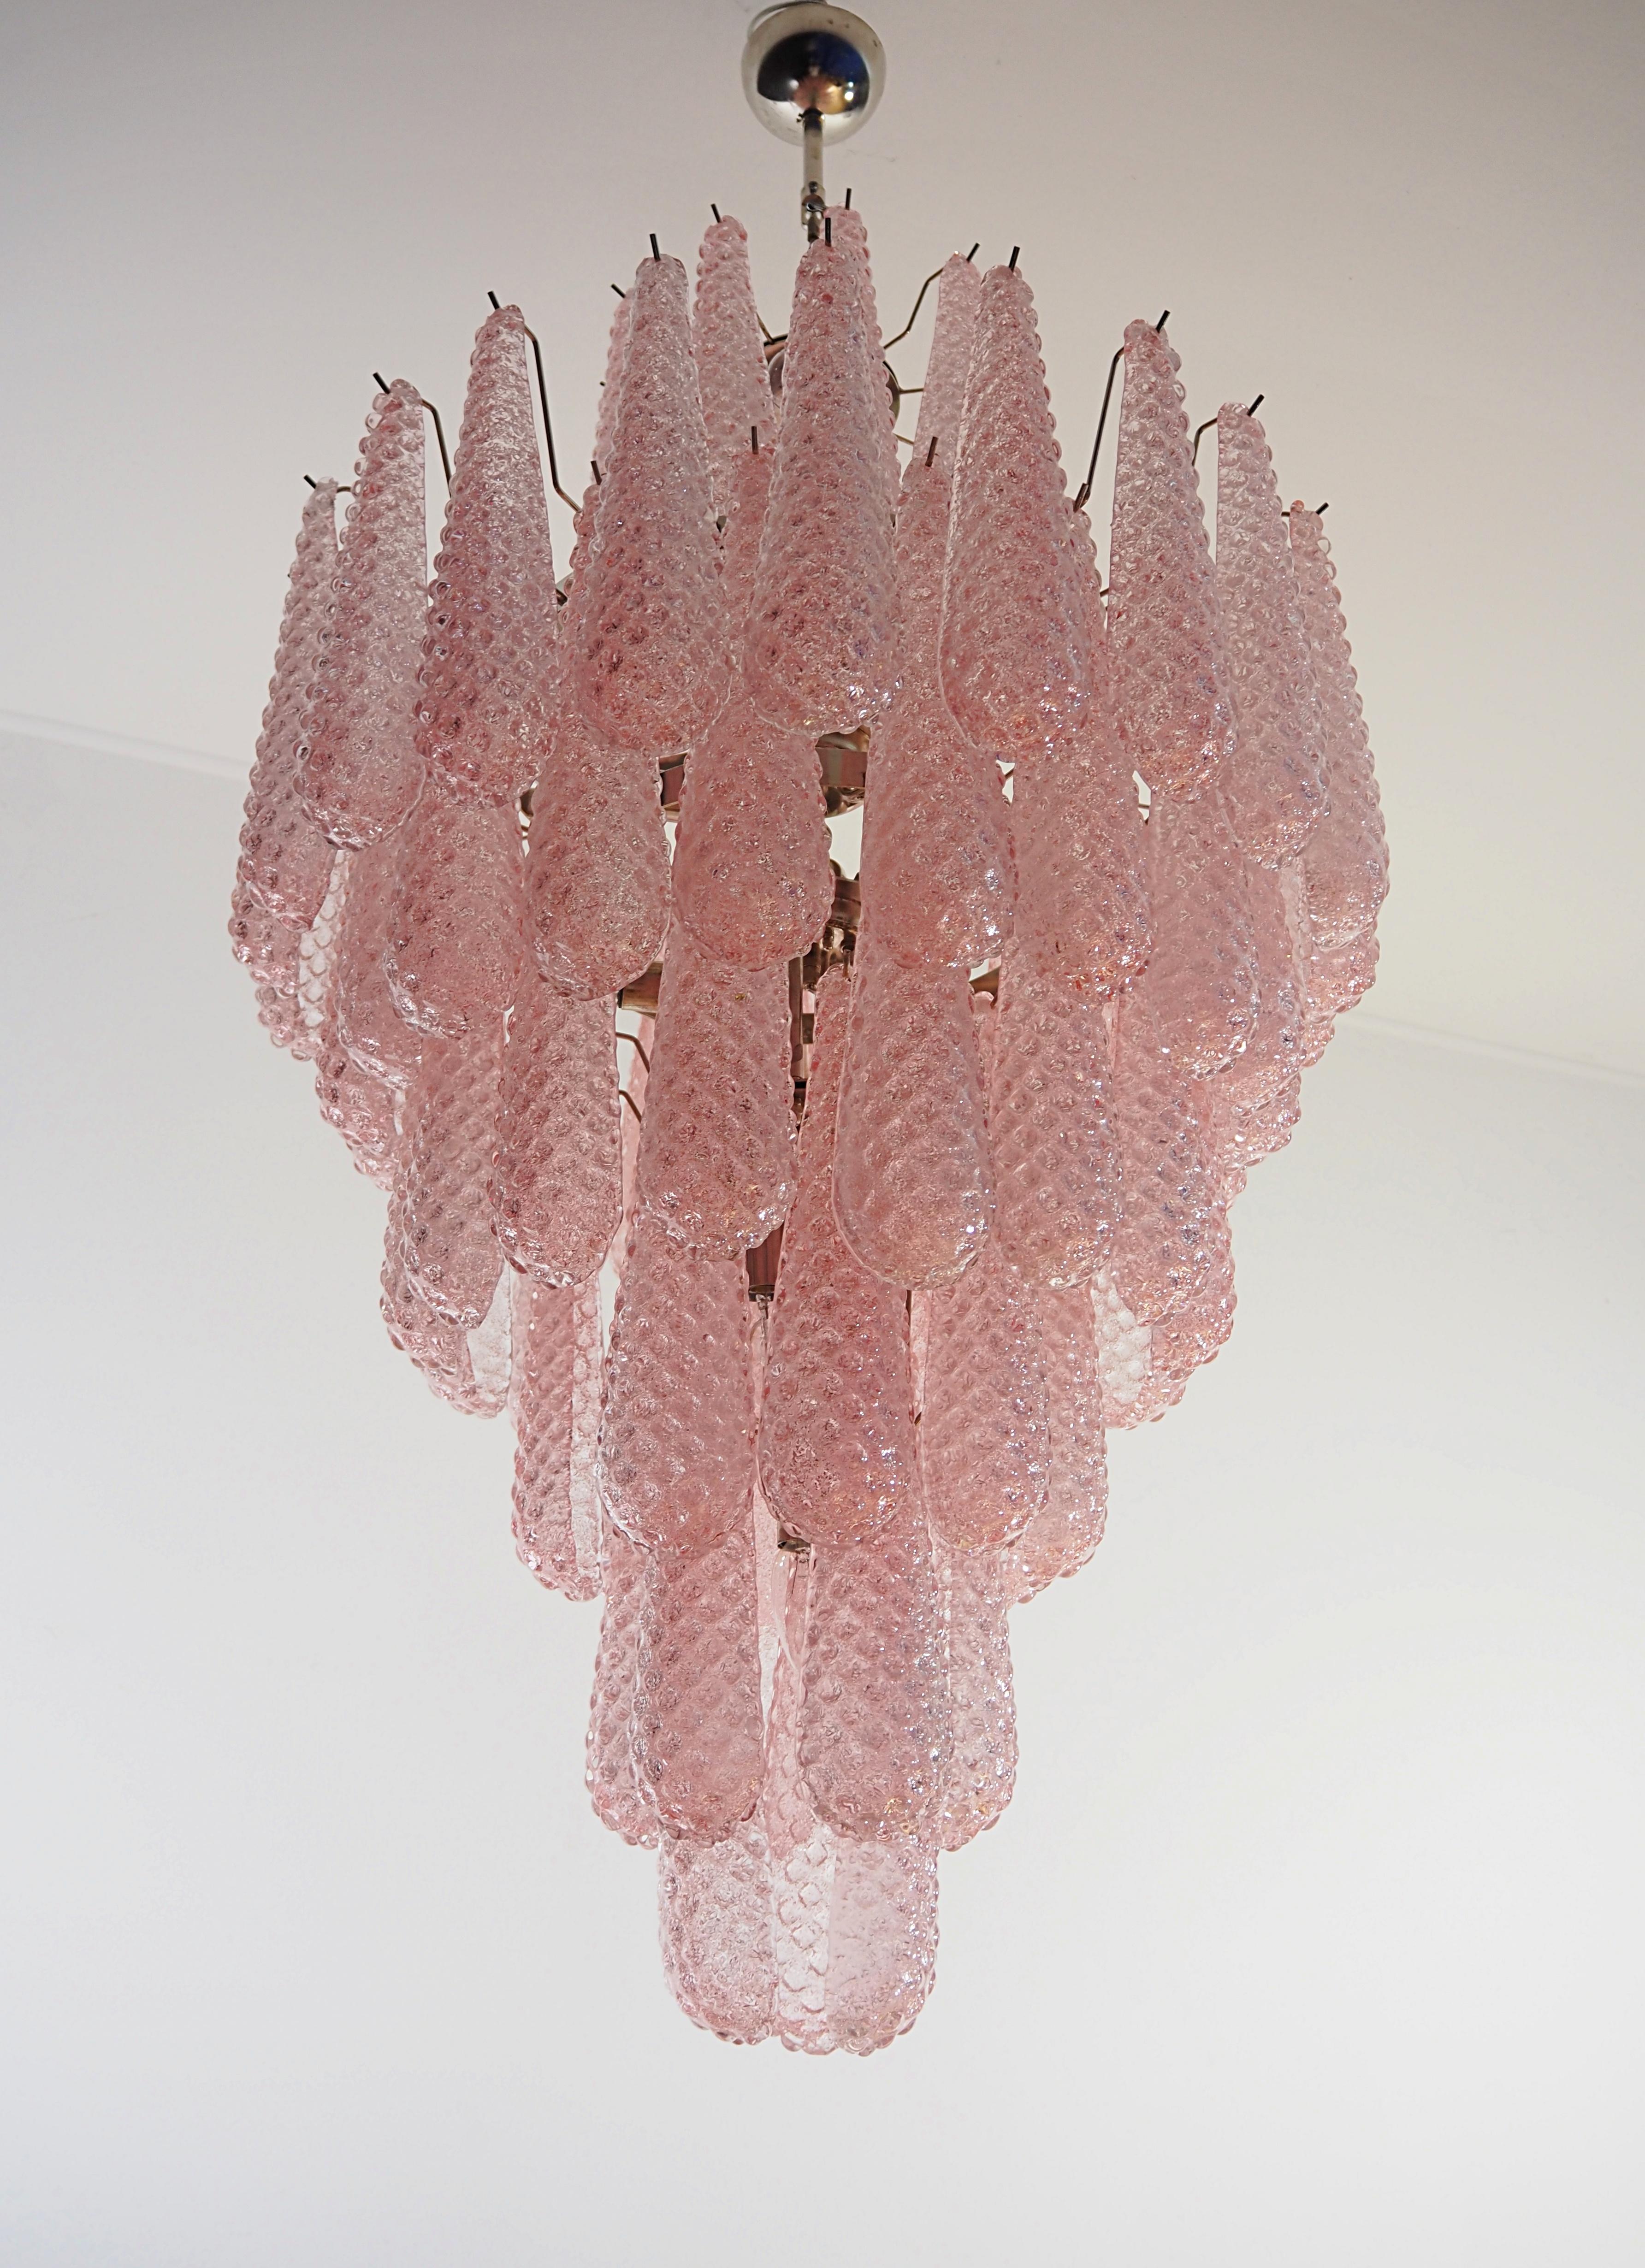 Huge Italian vintage Murano glass chandelier - 85 glass PINK petals drop For Sale 8